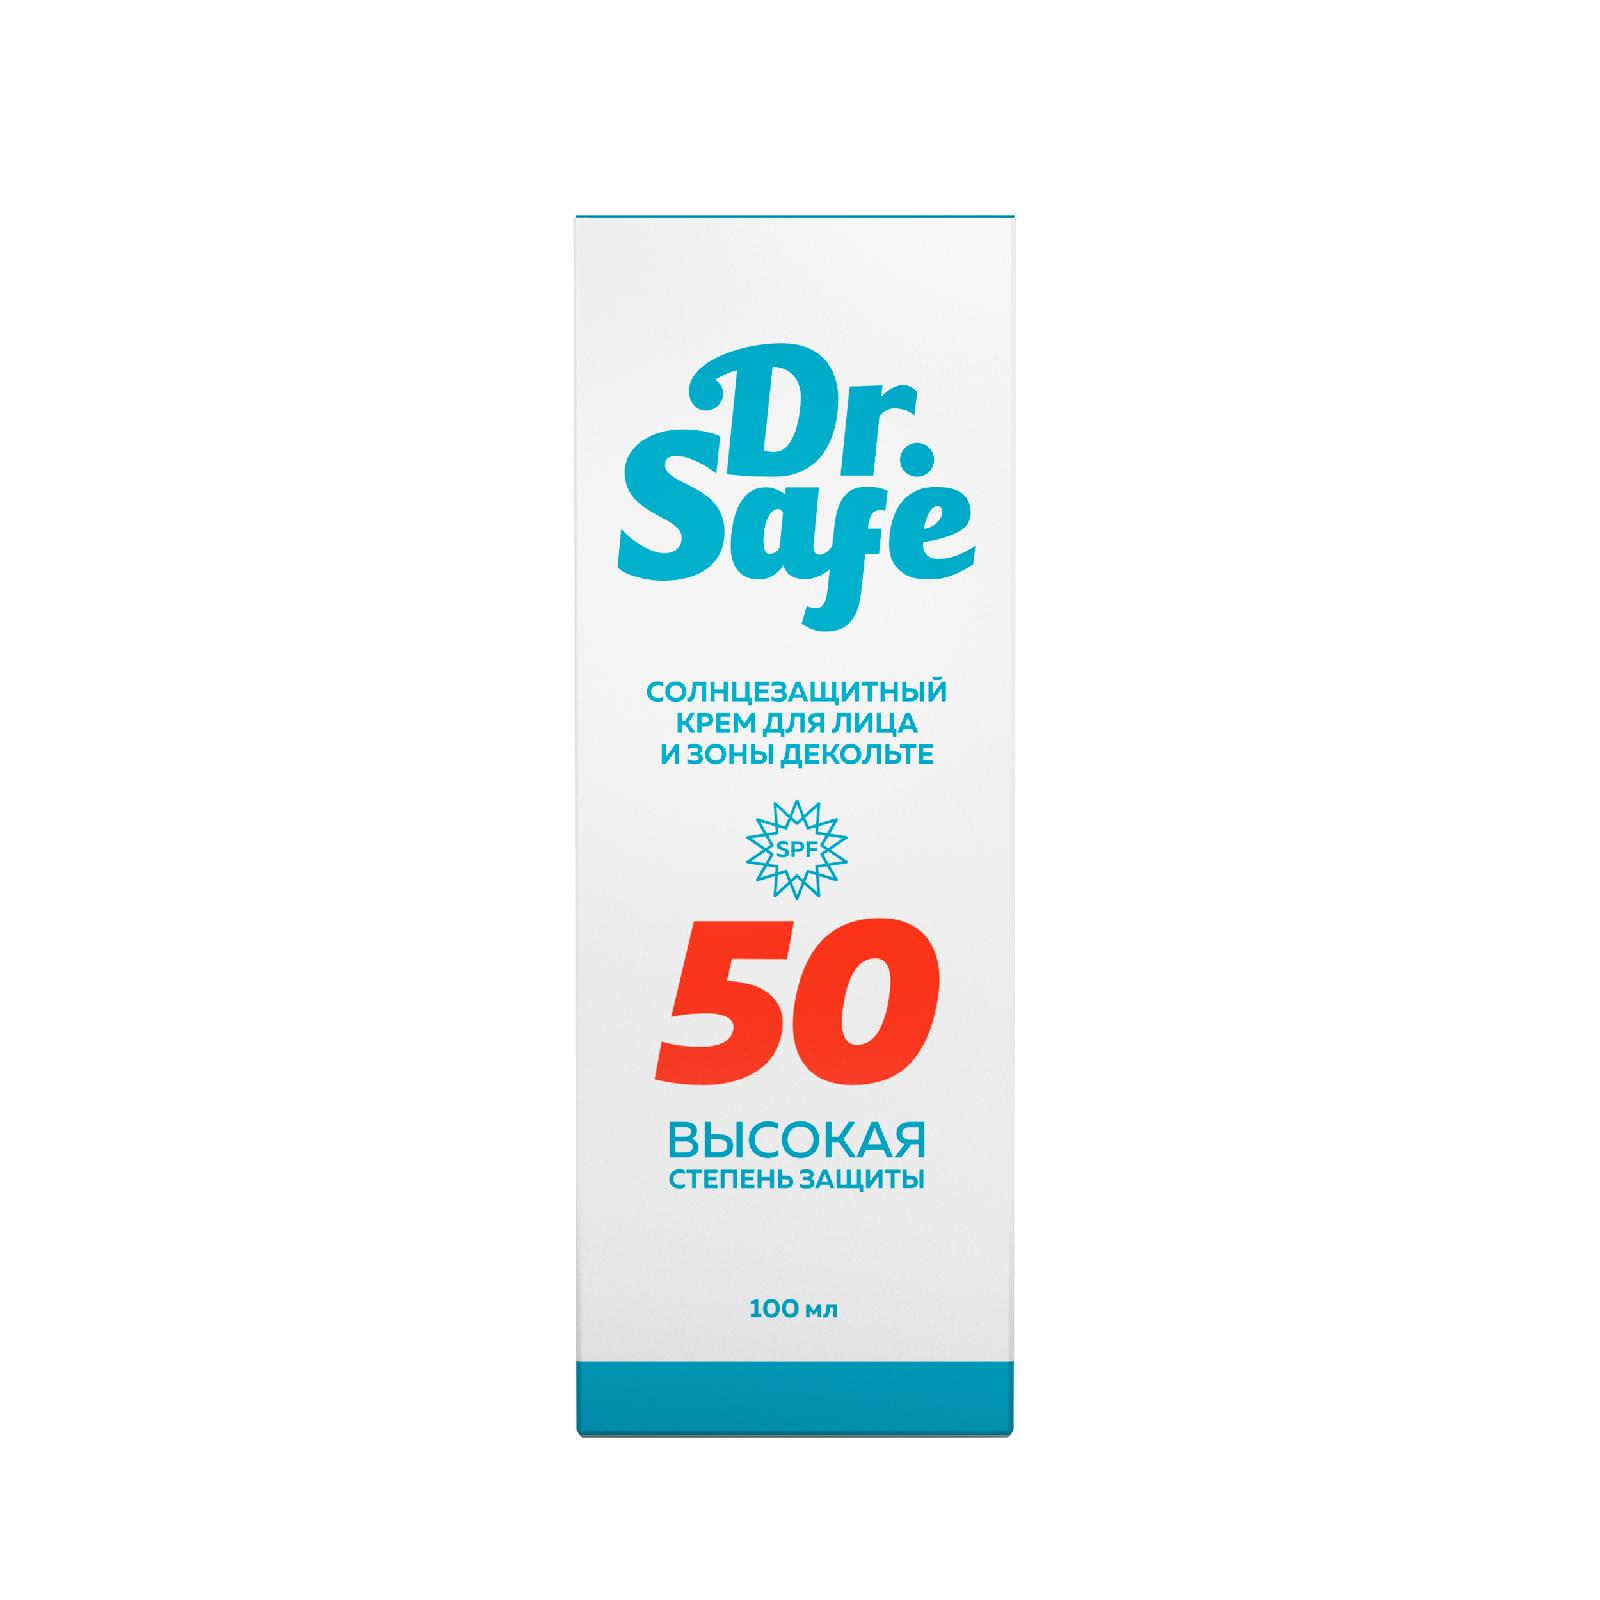 Солнцезащитный крем для лица DR.SAFE 50 SPF, 100 мл prosto cosmetics солнцезащитный крем для лица just happy с высокой степенью защиты от ультрафиолета 50